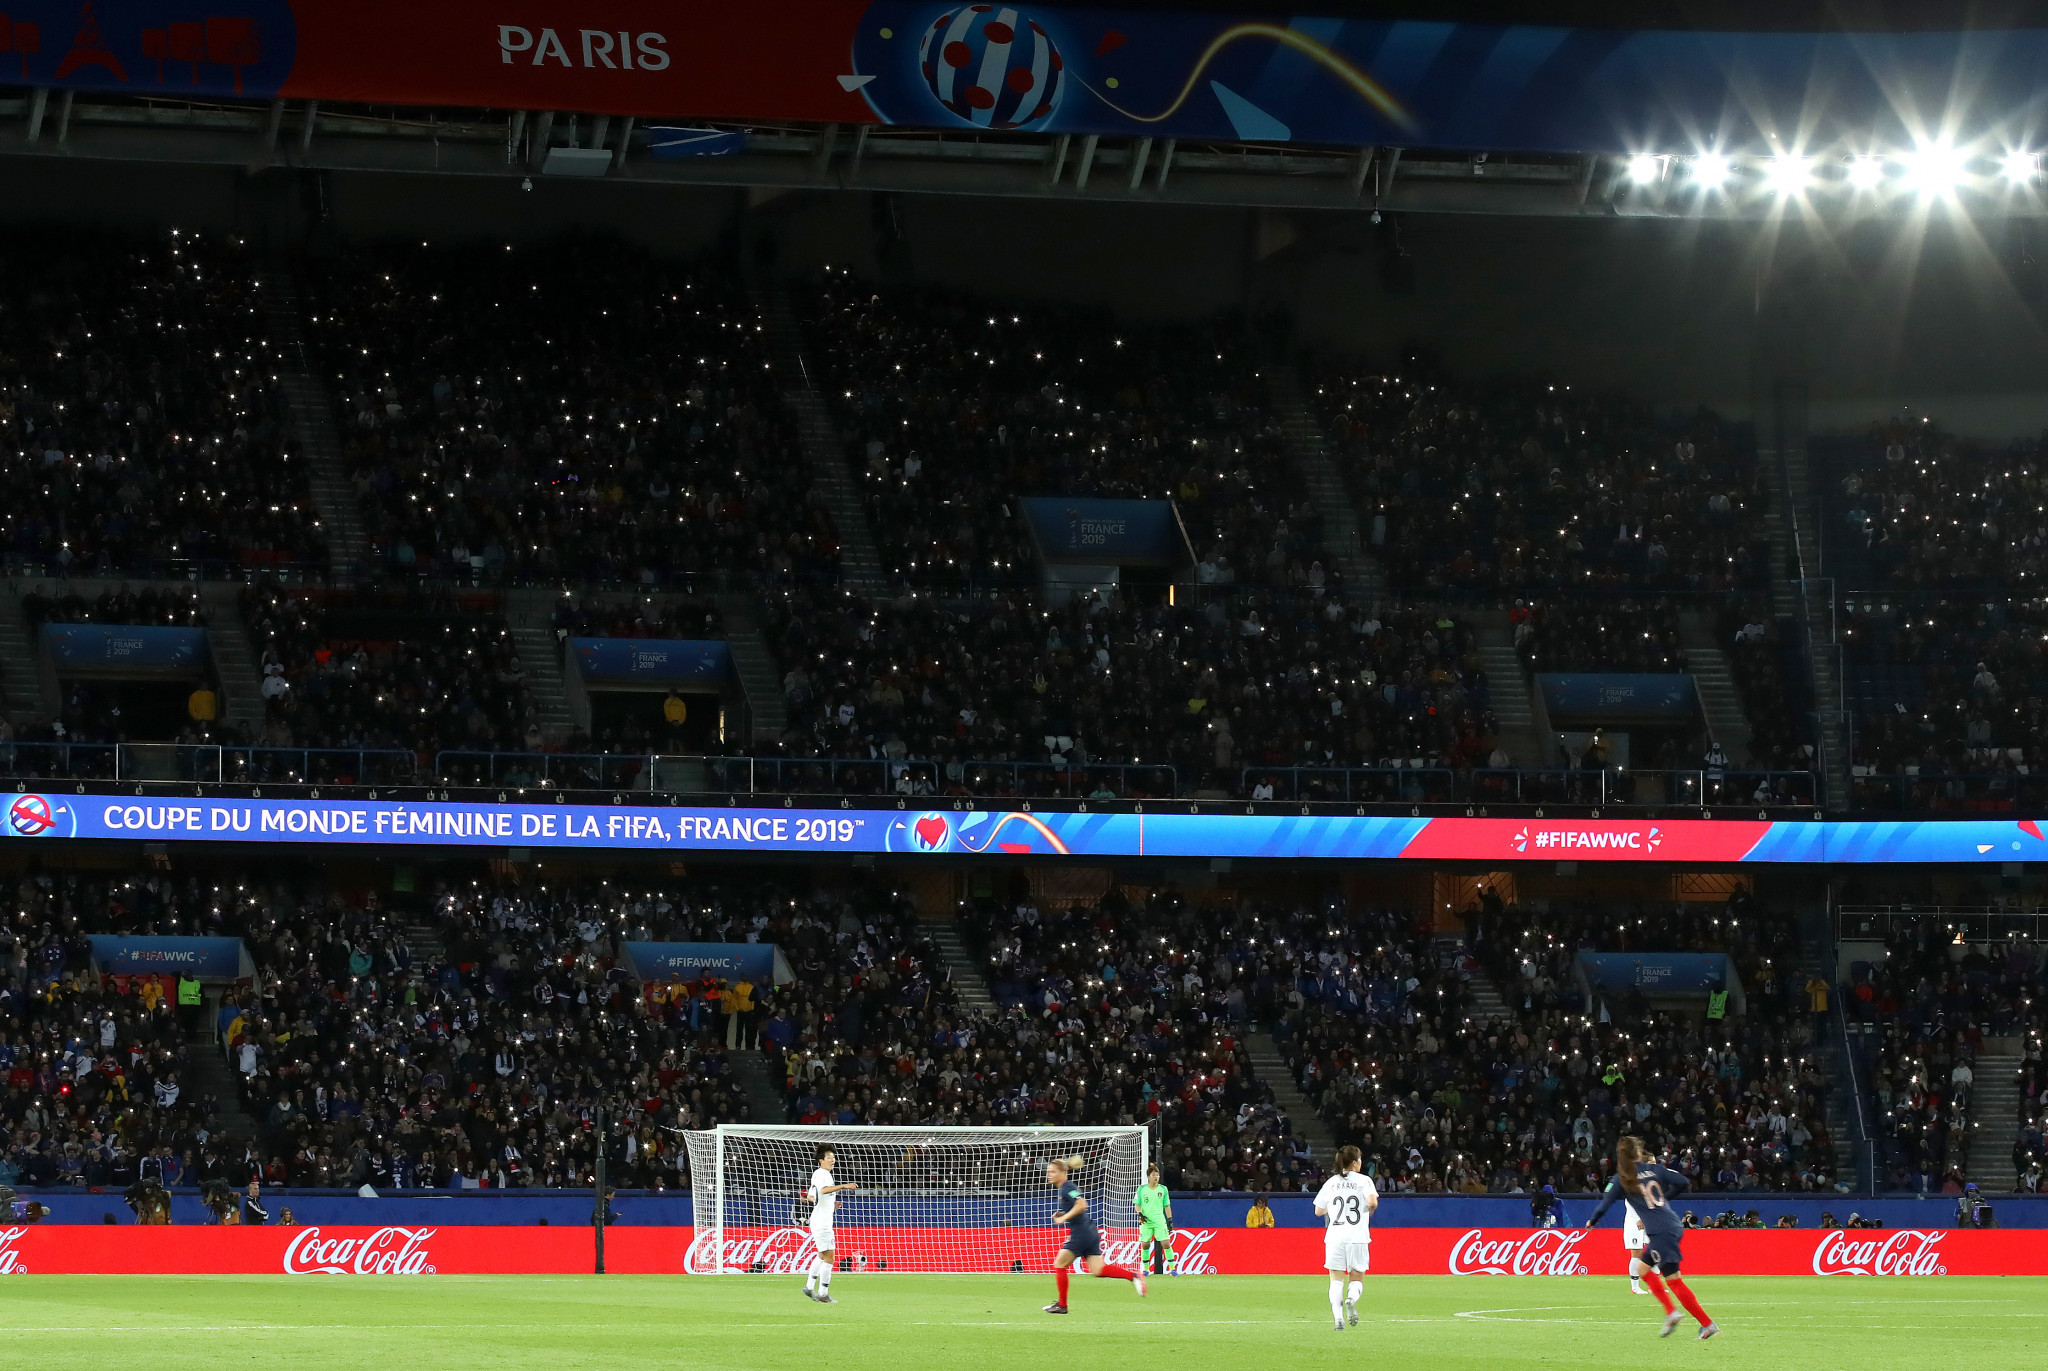 In total, 45,261 fans were in attendance at Paris's Parc des Princes ©Getty Images